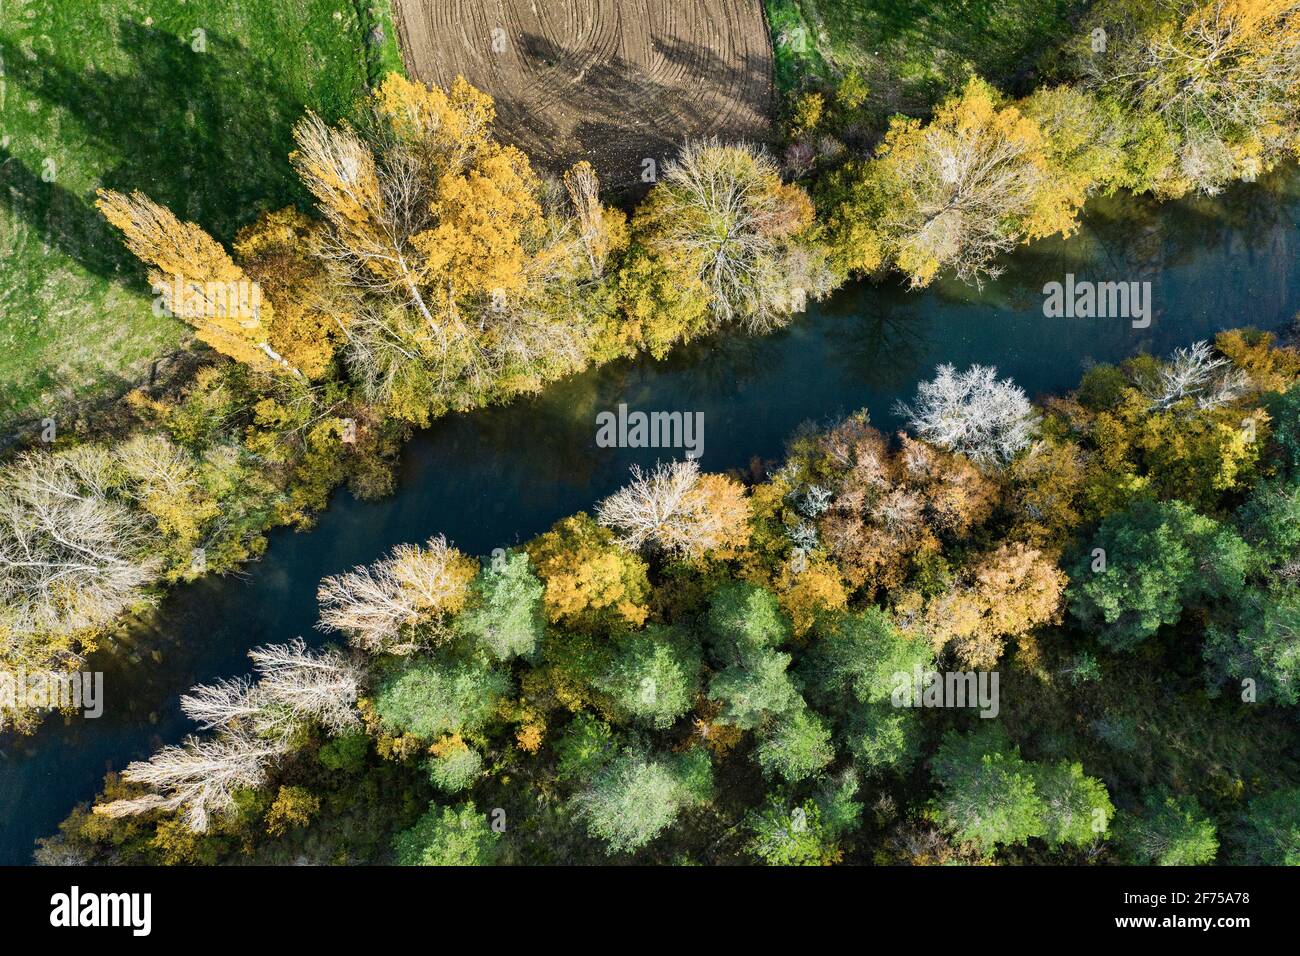 Vue aérienne d'une rivière avec végétation riveraine en automne. Banque D'Images